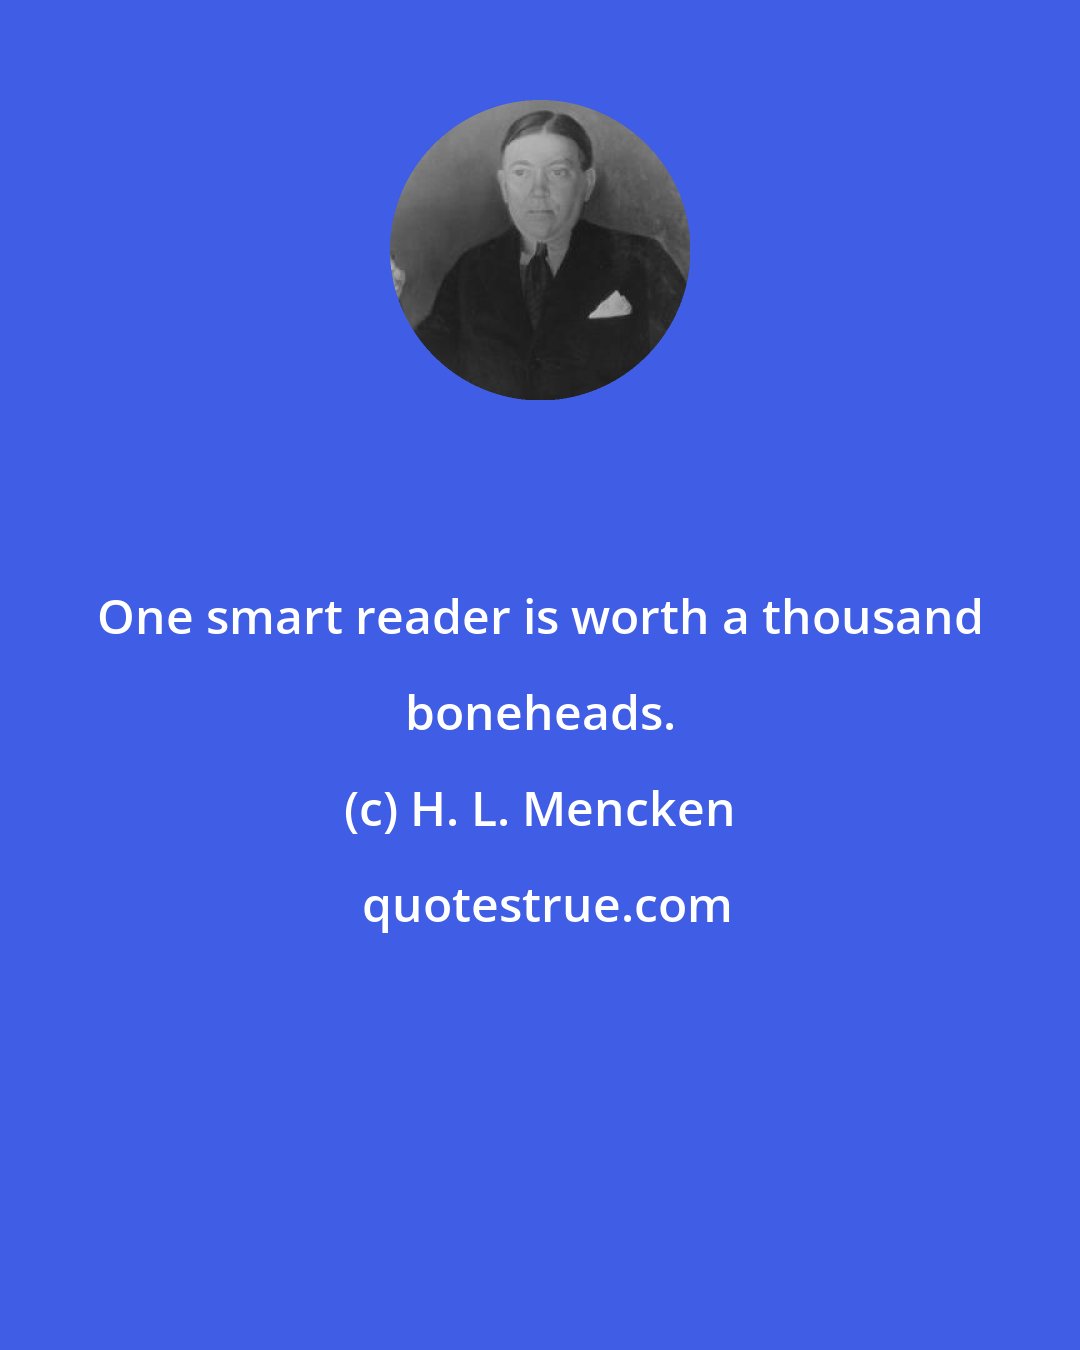 H. L. Mencken: One smart reader is worth a thousand boneheads.